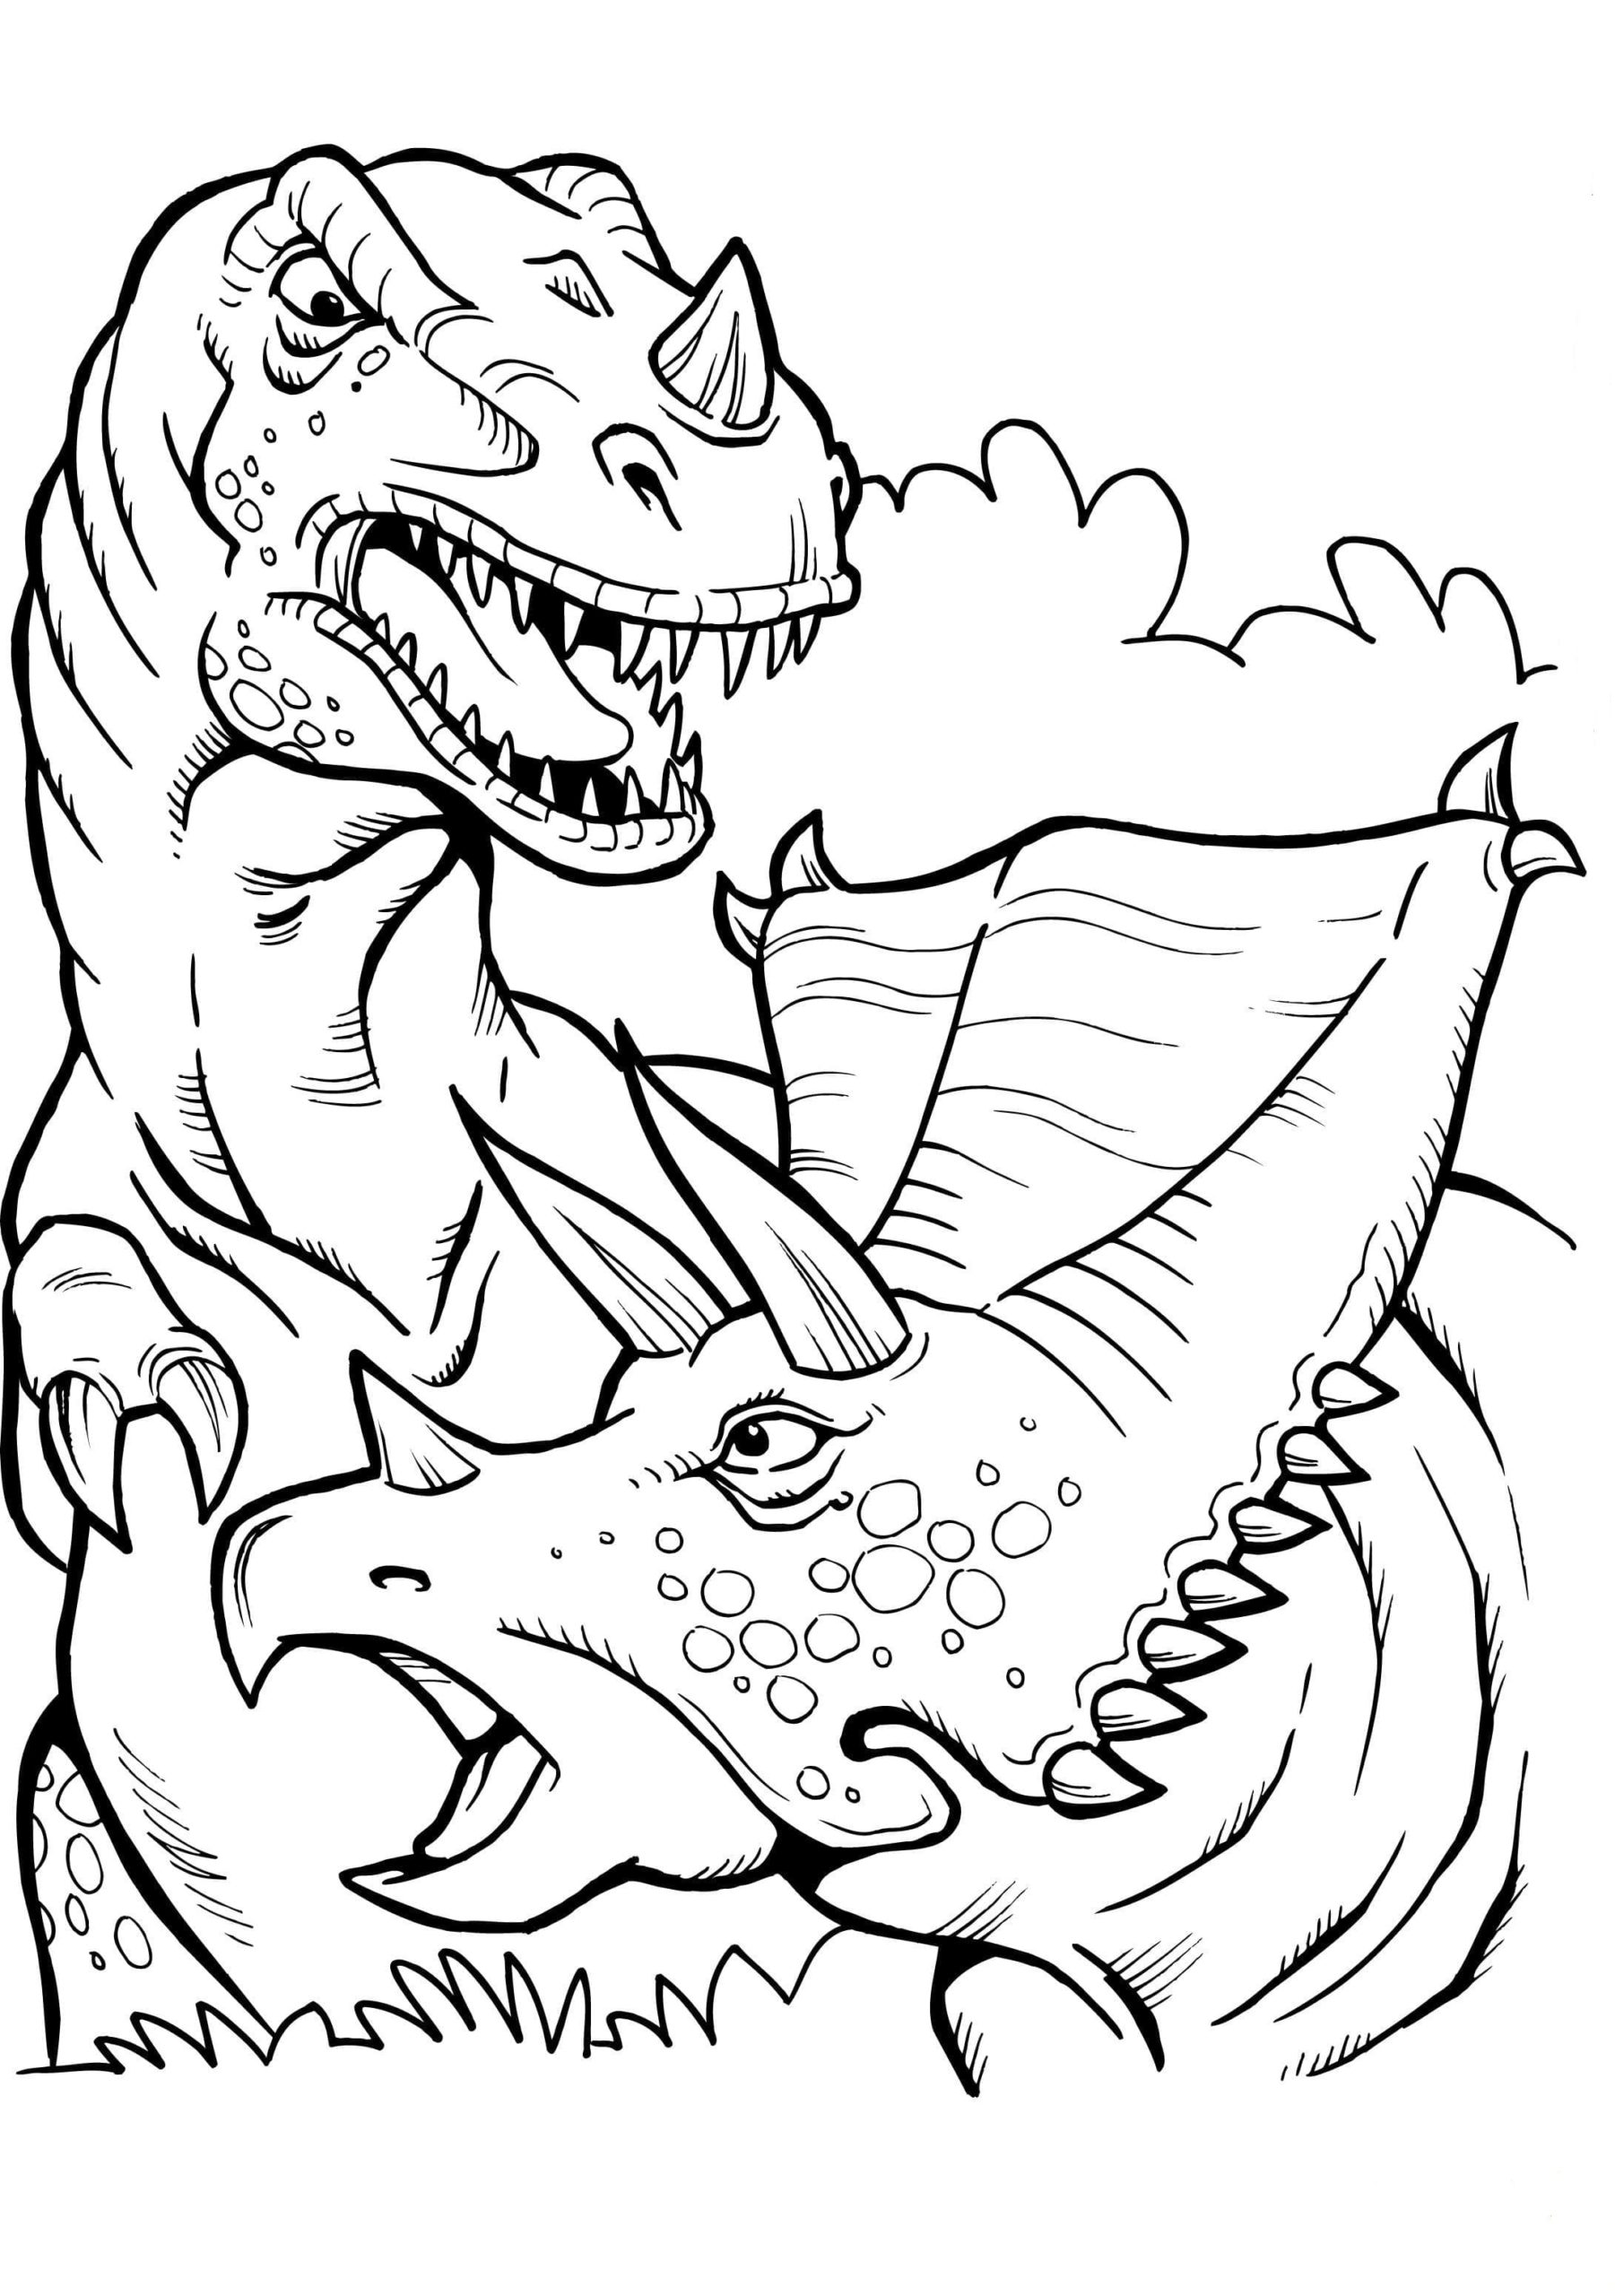 Para Colorear T-Rex (Tiranosaurio) - Imprimir